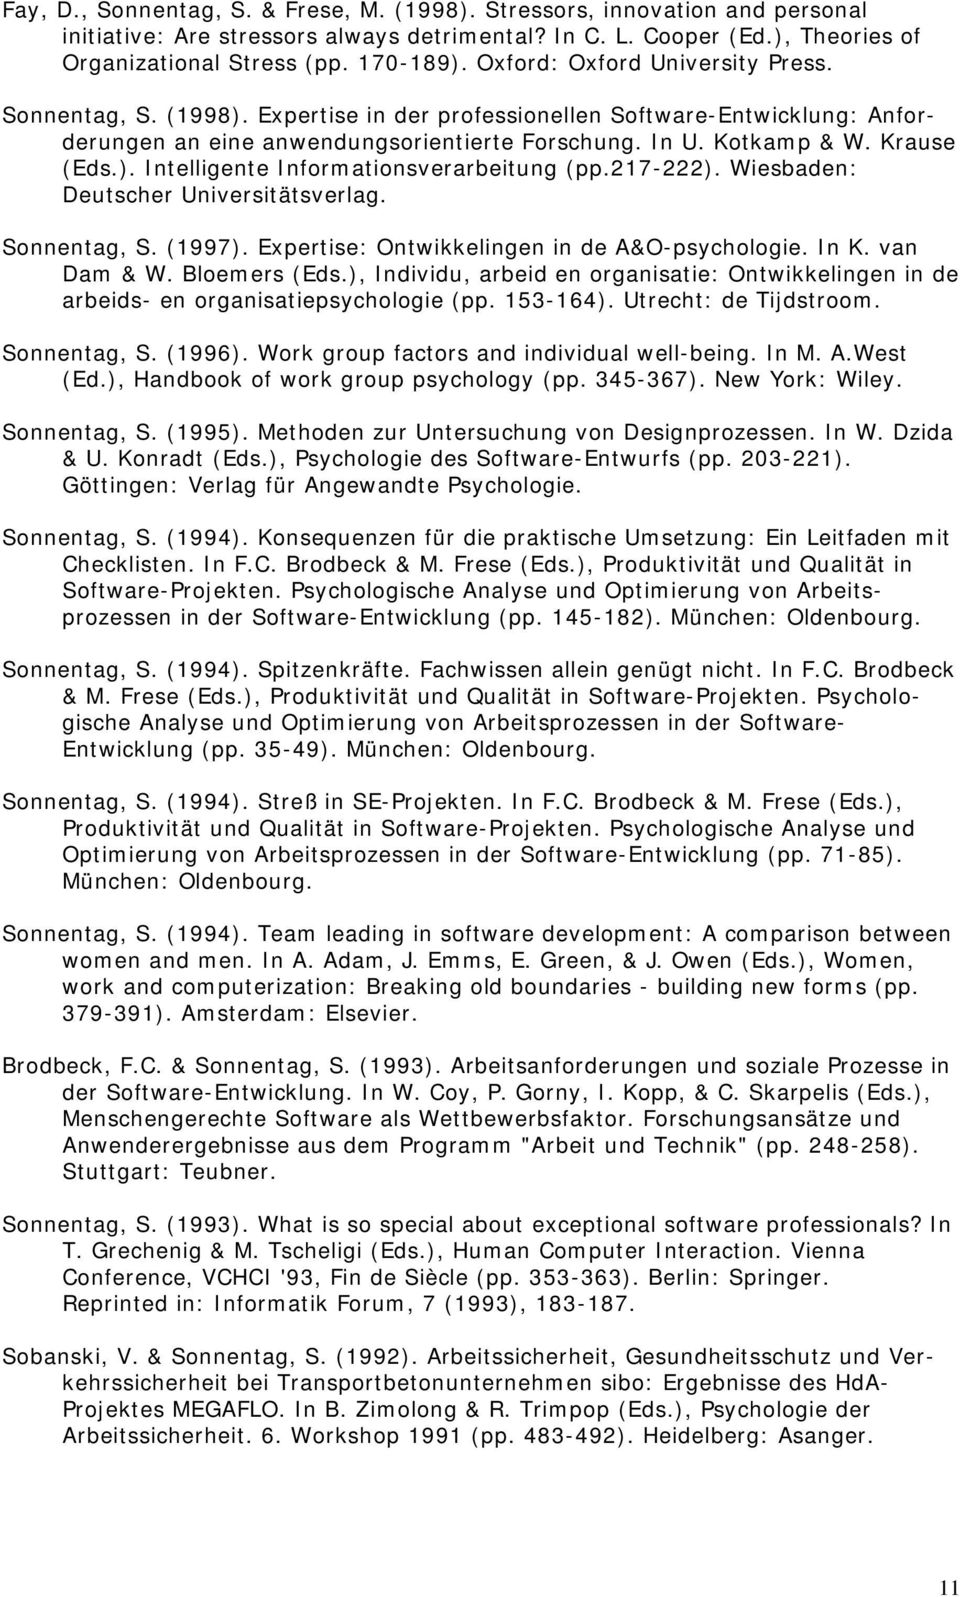 217-222). Wiesbaden: Deutscher Universitätsverlag. Sonnentag, S. (1997). Expertise: Ontwikkelingen in de A&O-psychologie. In K. van Dam & W. Bloemers (Eds.